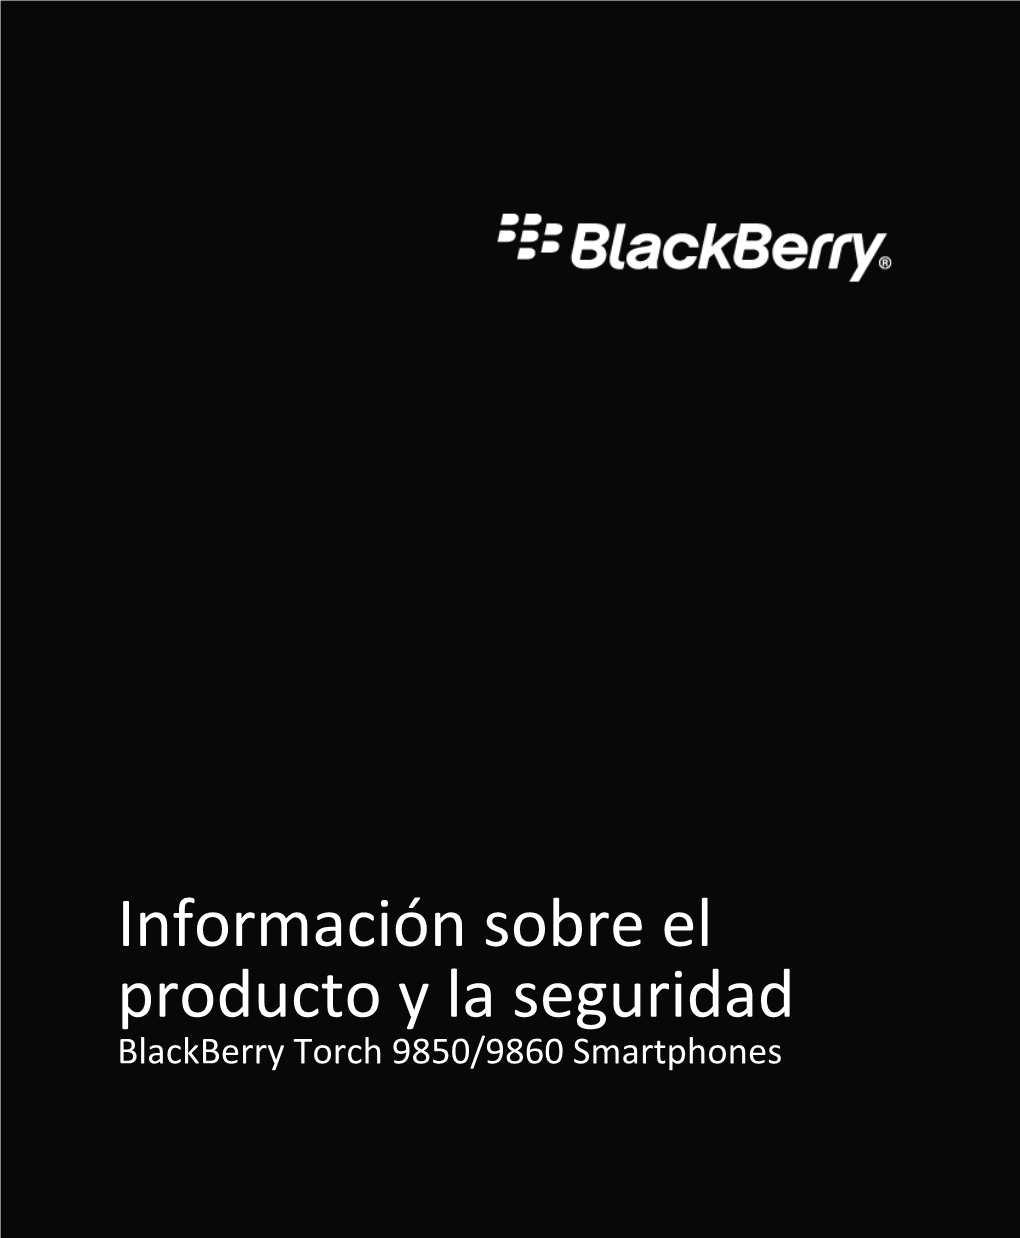 Blackberry Torch 9850/9860 Smartphones %"$!)'!#'%+!"%*)!-&!**!&&")"*%*!&"%*")&")&%*"!%+')!1 MAT-39419-005